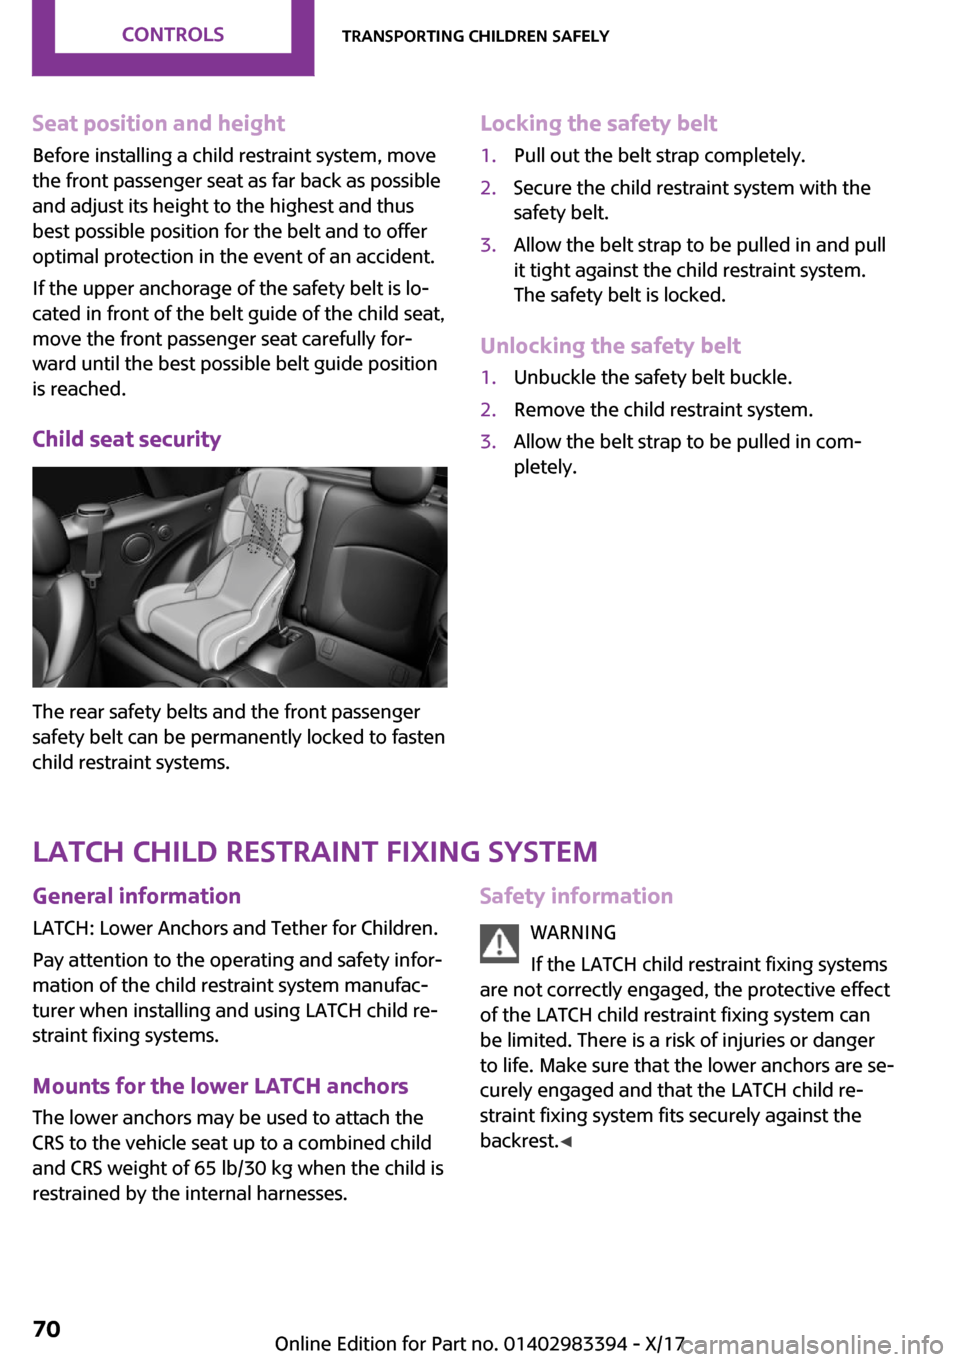 MINI Convertible 2018 Repair Manual �S�e�a�t��p�o�s�i�t�i�o�n��a�n�d��h�e�i�g�h�t
�B�e�f�o�r�e� �i�n�s�t�a�l�l�i�n�g� �a� �c�h�i�l�d� �r�e�s�t�r�a�i�n�t� �s�y�s�t�e�m�,� �m�o�v�e
�t�h�e� �f�r�o�n�t� �p�a�s�s�e�n�g�e�r� �s�e�a�t� �a�s